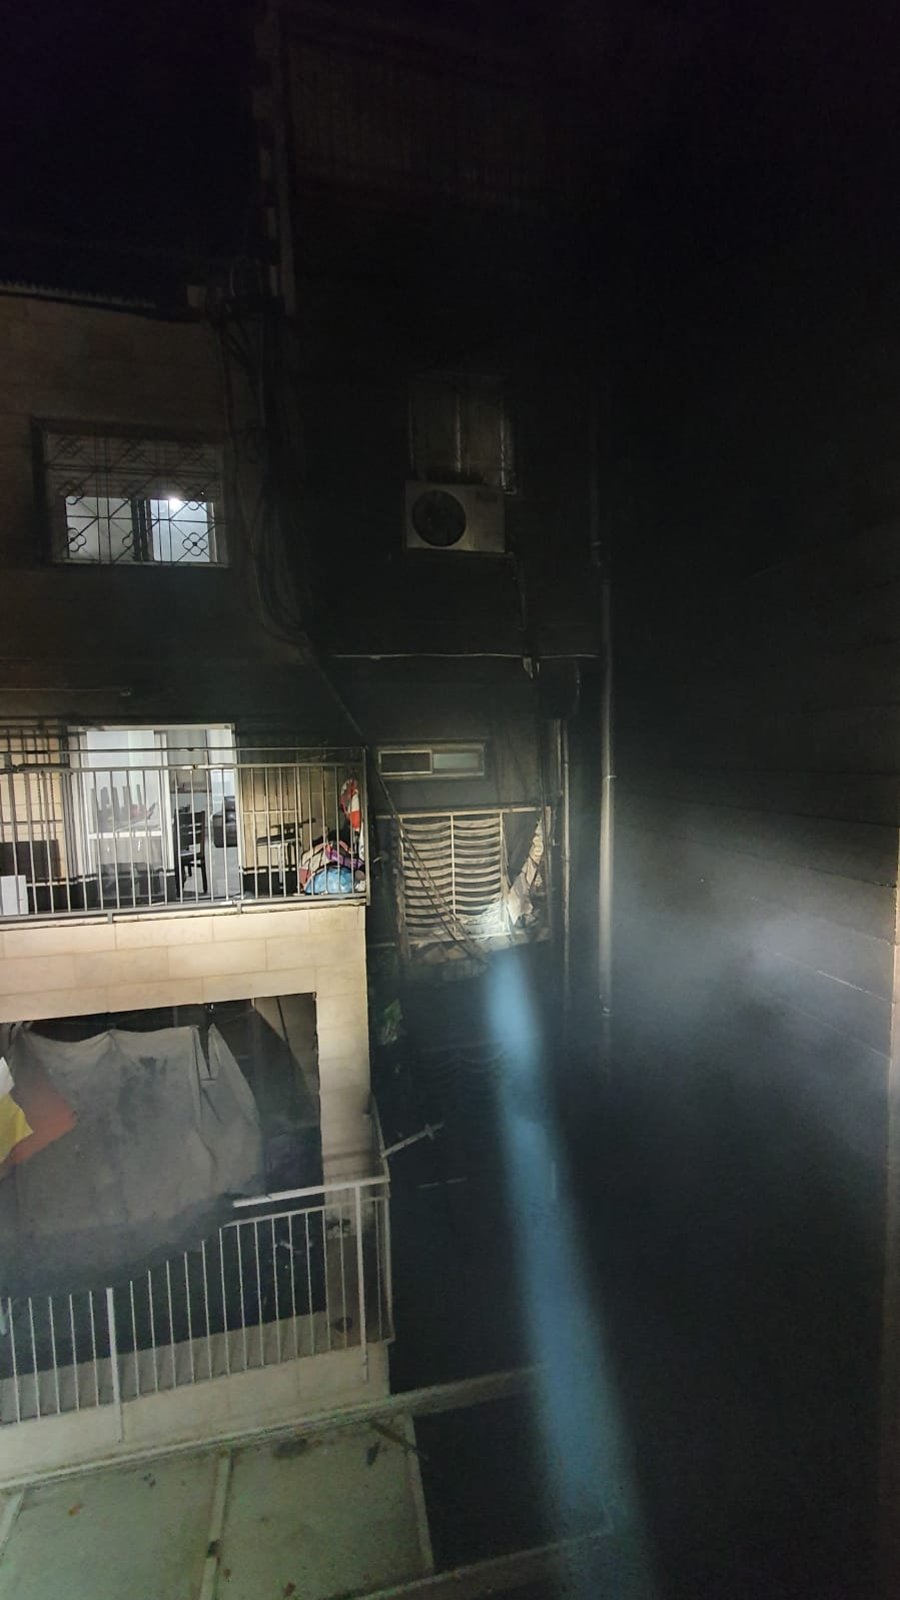 שריפה פרצה בבניין מגורים; לוחמי האש חילצו לכודים